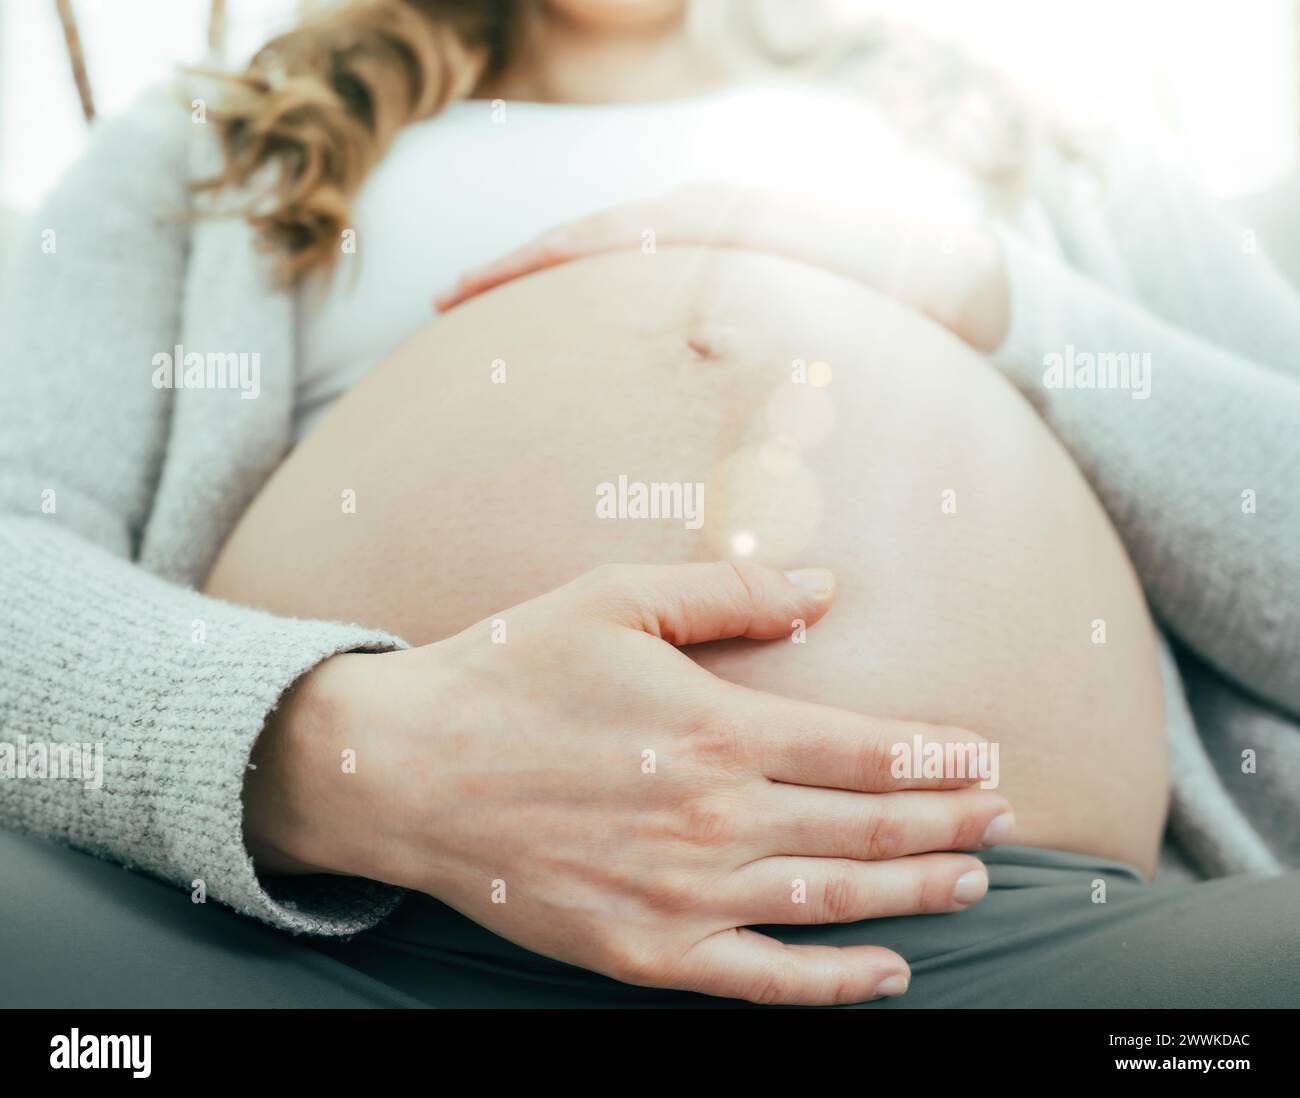 Beschreibung: Frontalansicht einer Frau, die in den letzten Monaten der Schwangerschaft auf dem Sofa sitzt und sanft ihren Bauch hält. Schwangerschaft drittes Trimenon - Woche 34. Frontal Stockfoto